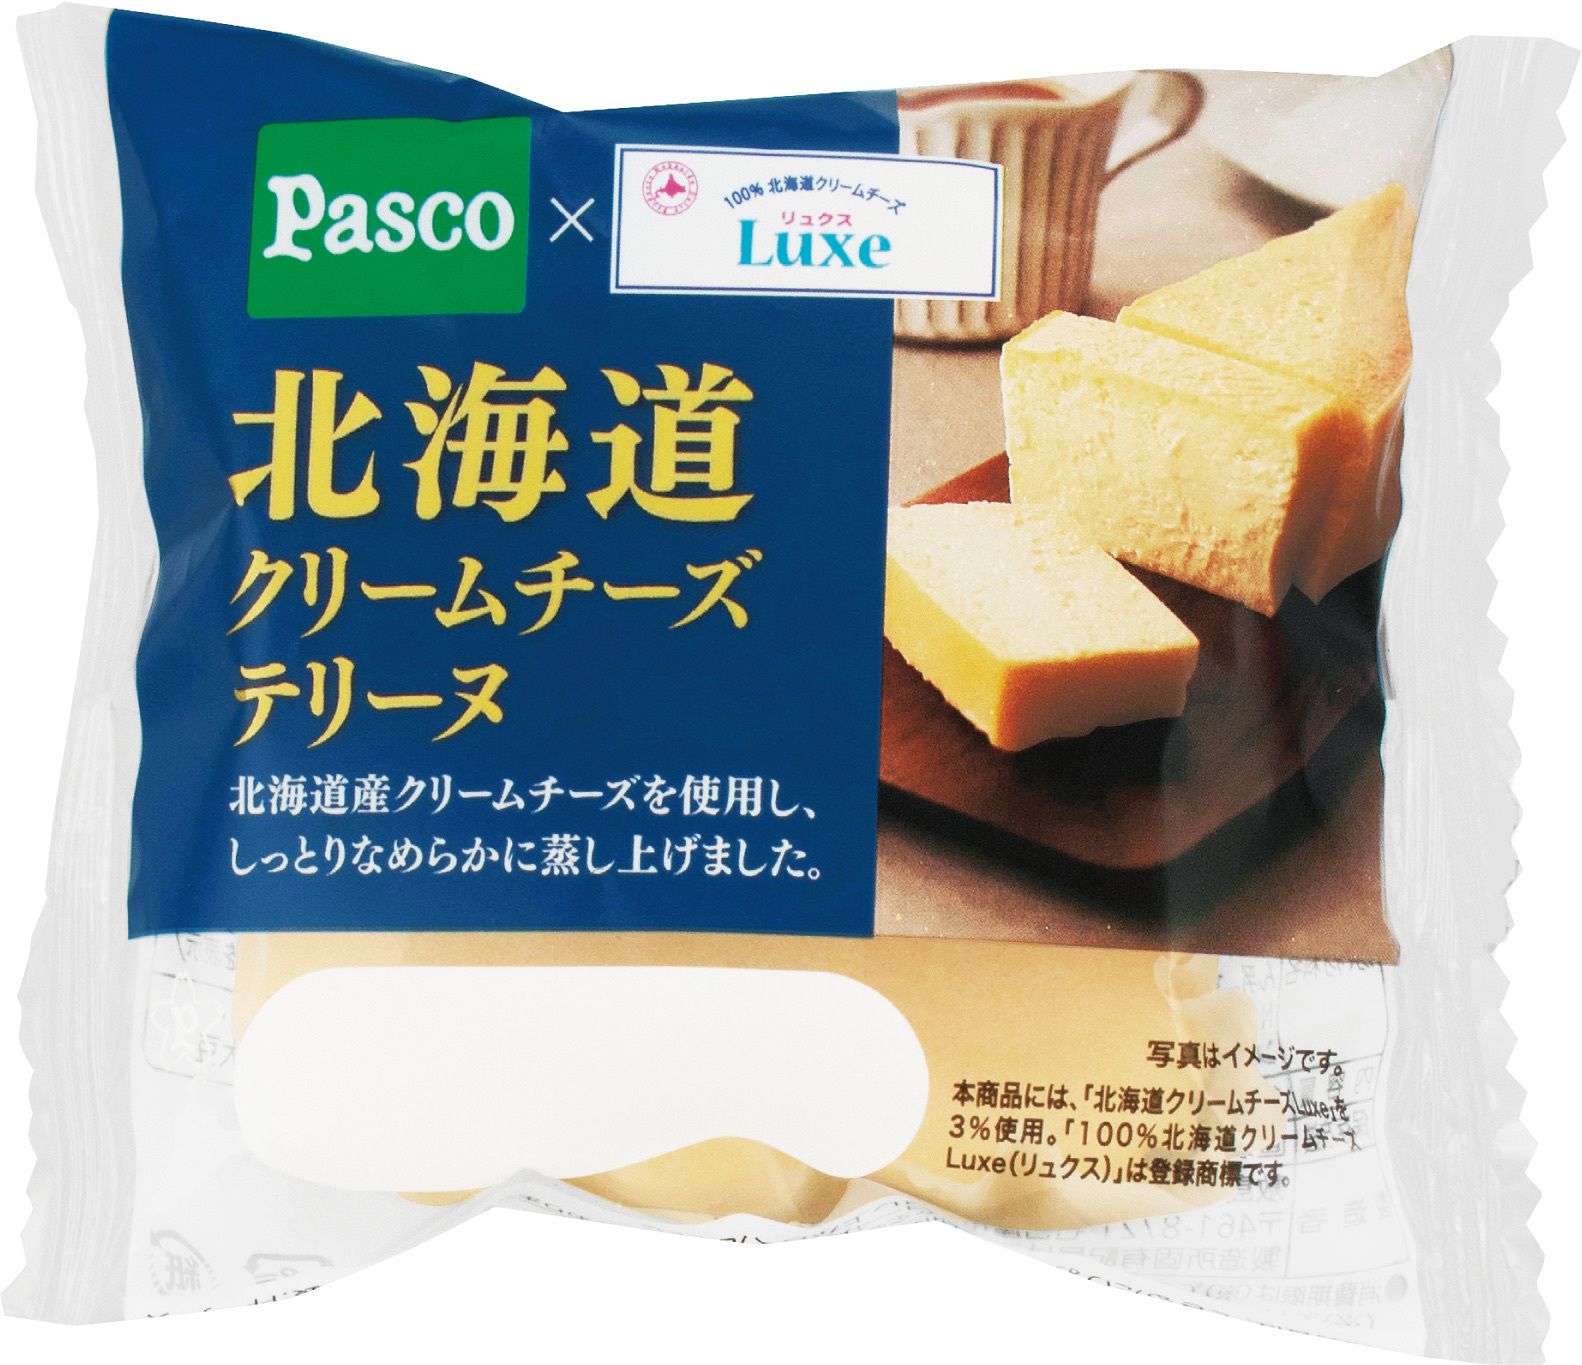 北海道クリームチーズ「Luxe(リュクス)」を使用した贅沢な味わい「北海道クリームチーズデニッシュ」「北海道クリームチーズテリーヌ」新発売 #Z世代Pick